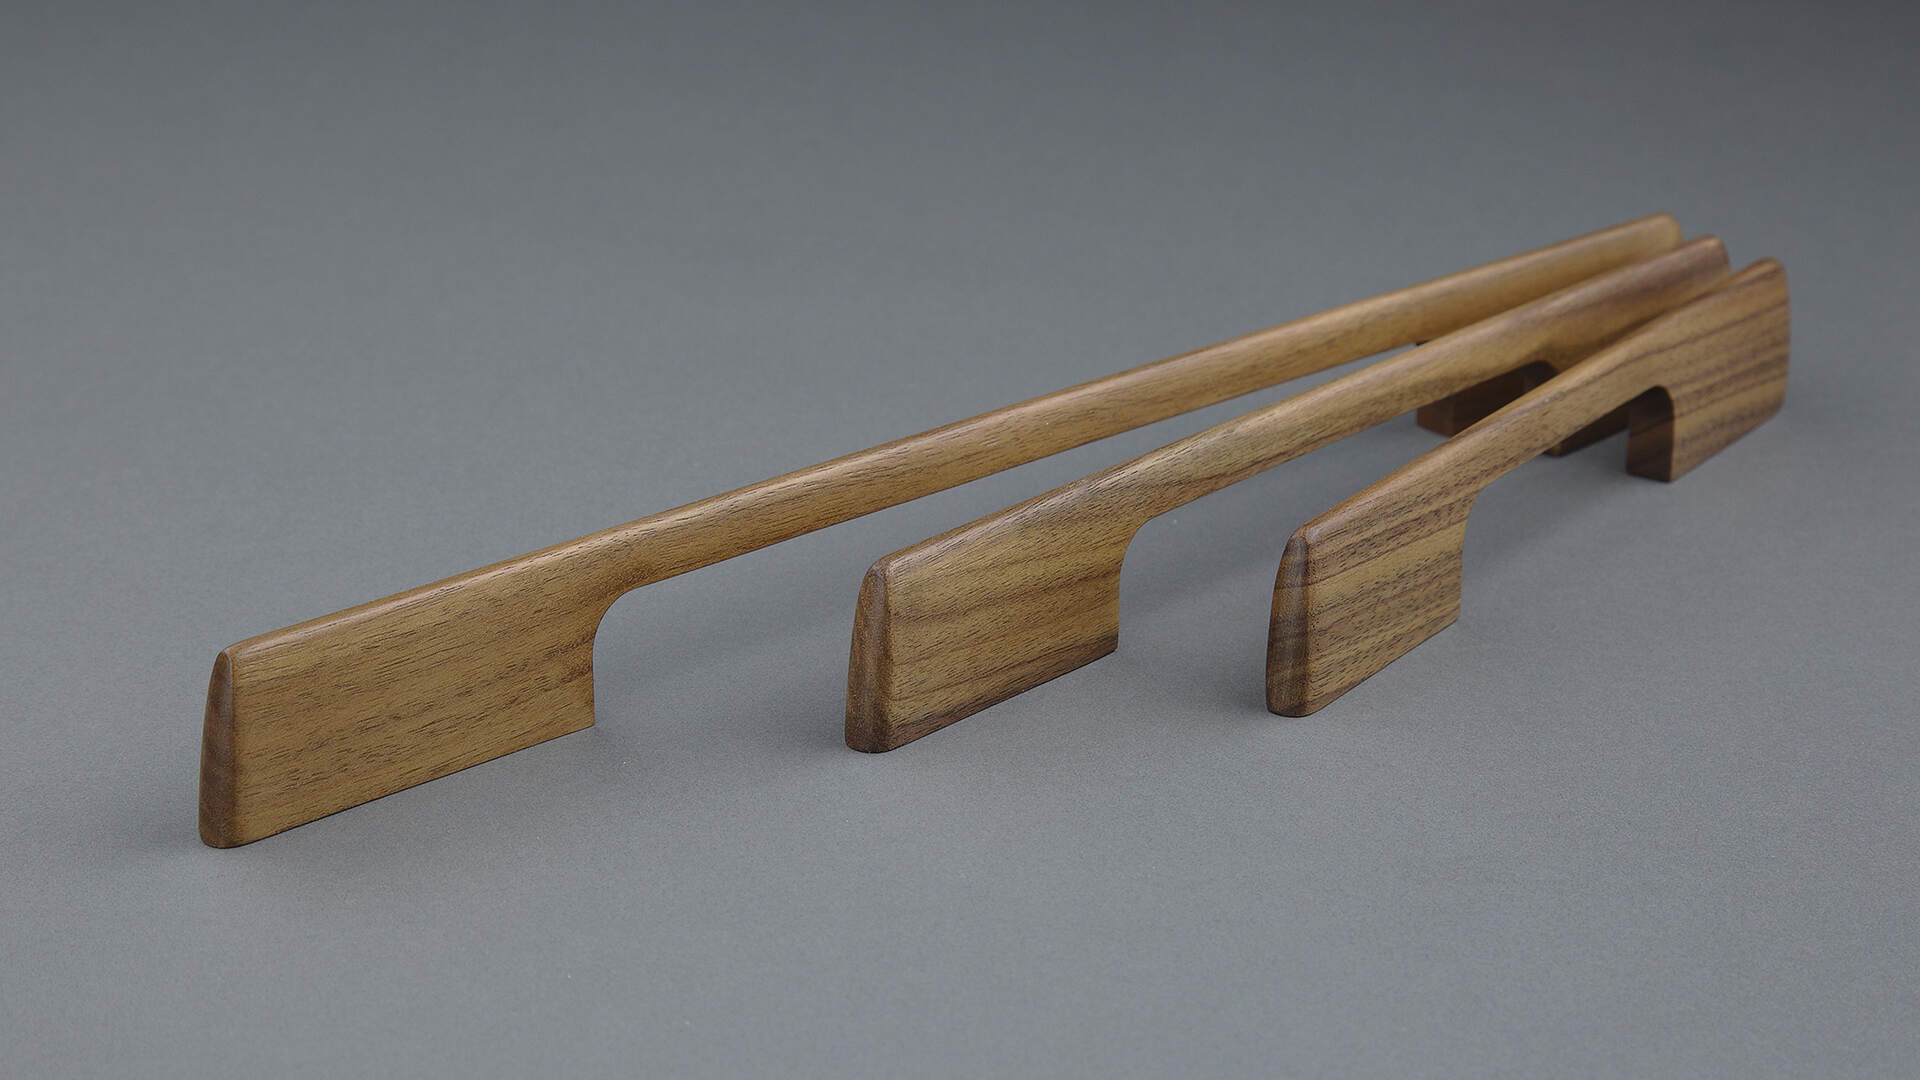 мебельная ручка скоба из дерева